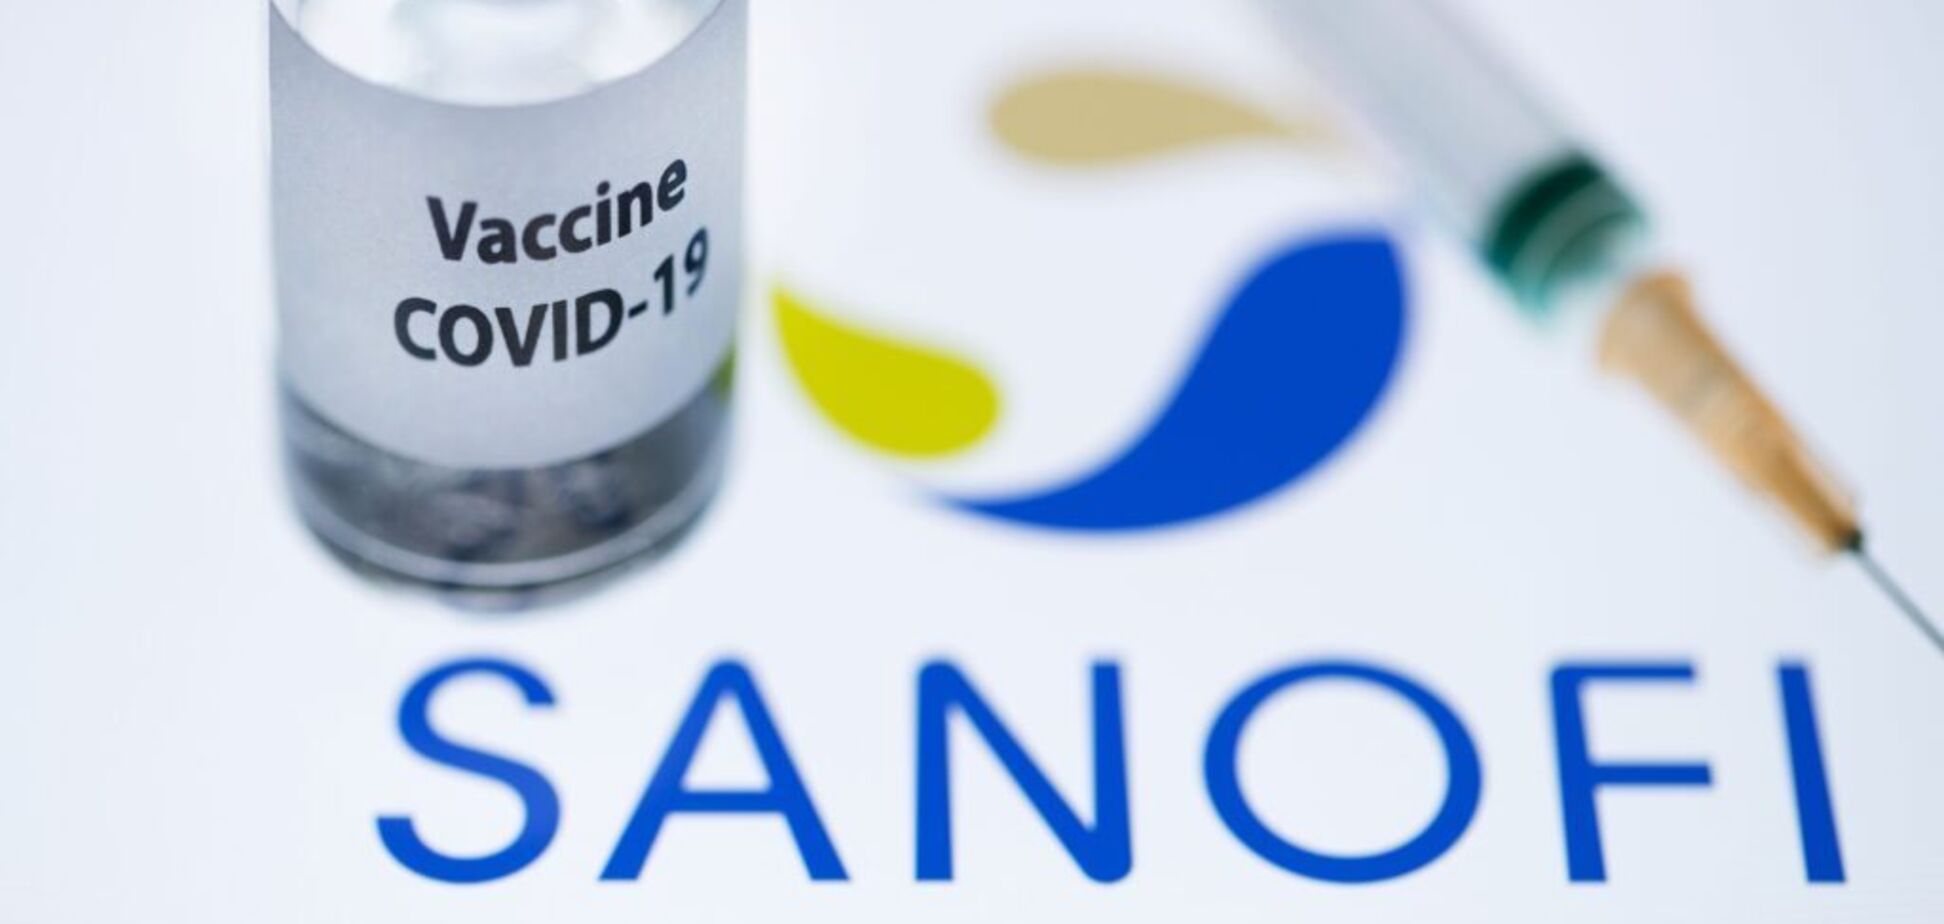 Вакцина COVID-19 от Sanofi-GSK прошла успешные испытания на людях